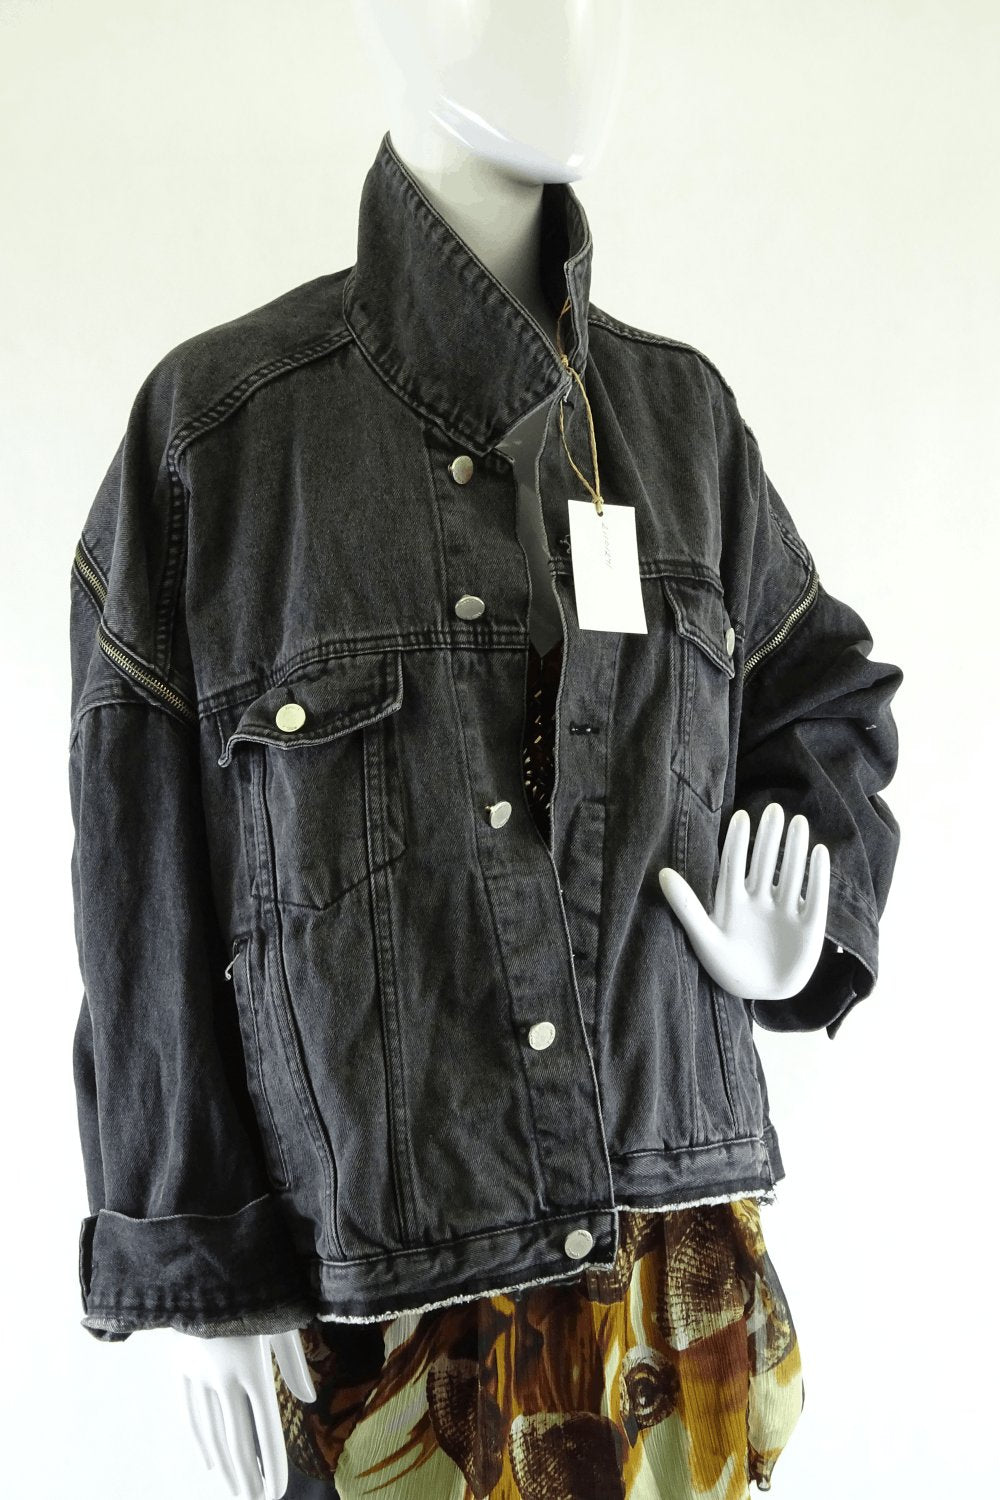 Find J oversized vintage jacket 10 - 14